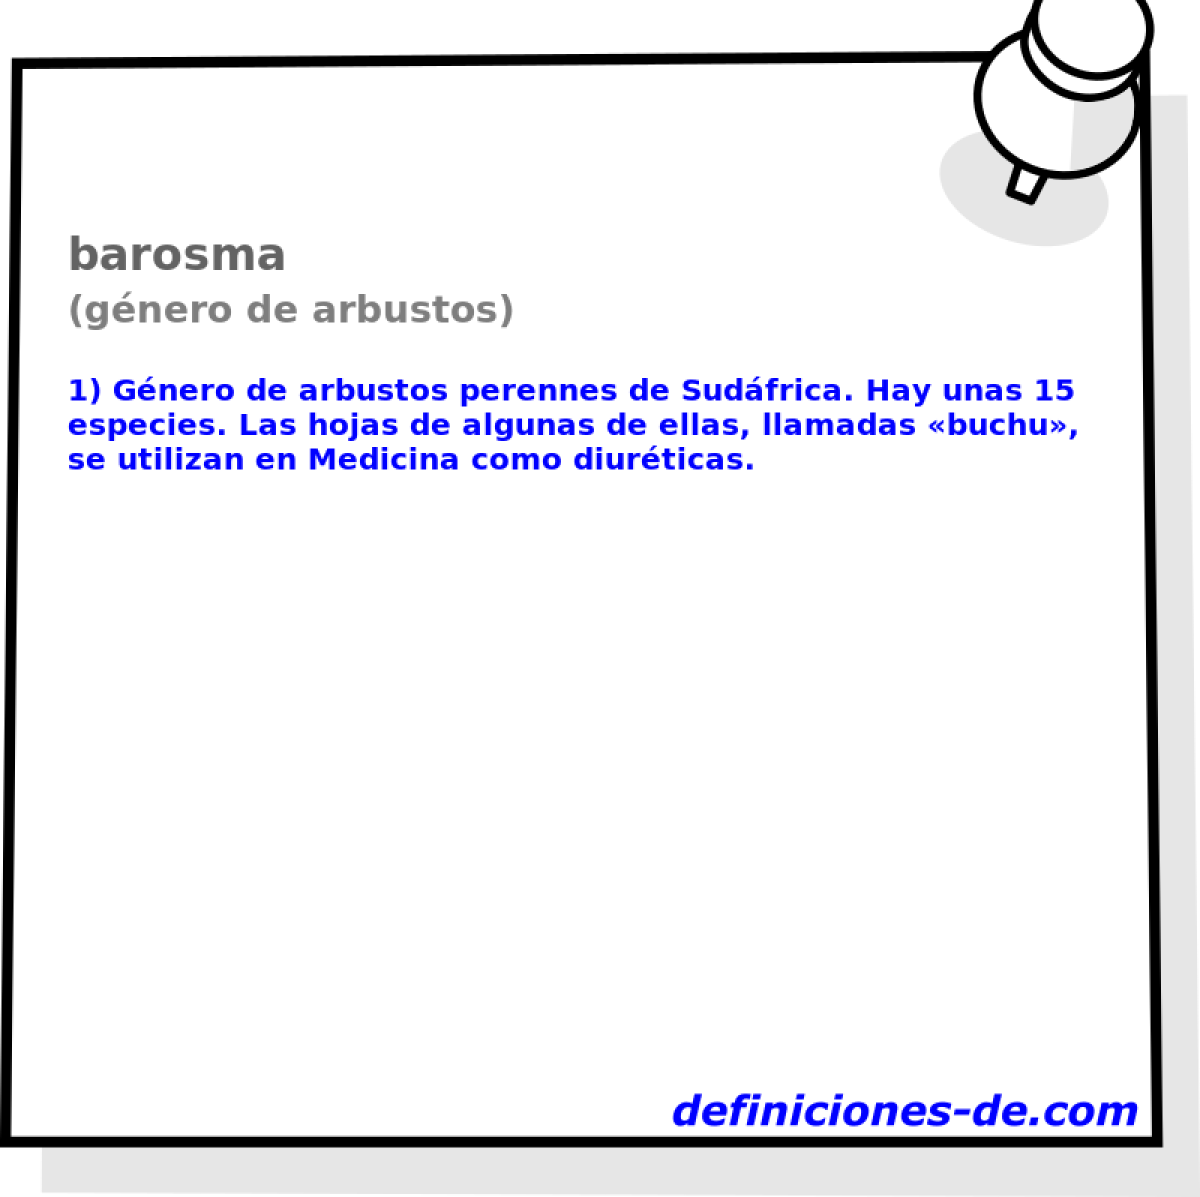 barosma (gnero de arbustos)